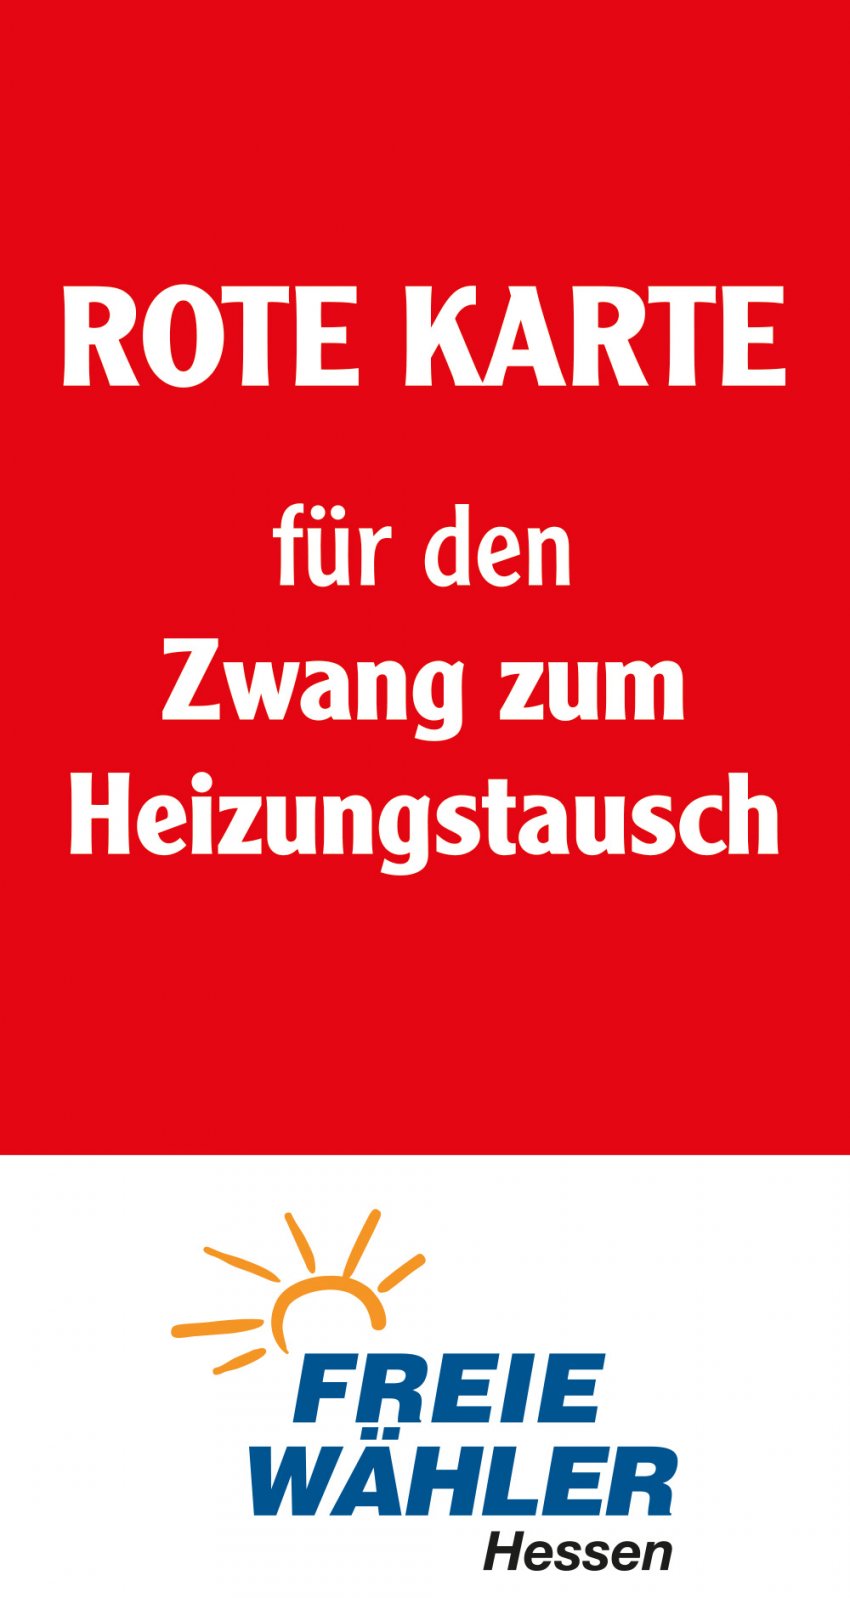 Rote Karte Heizungstausch (Bild lang)